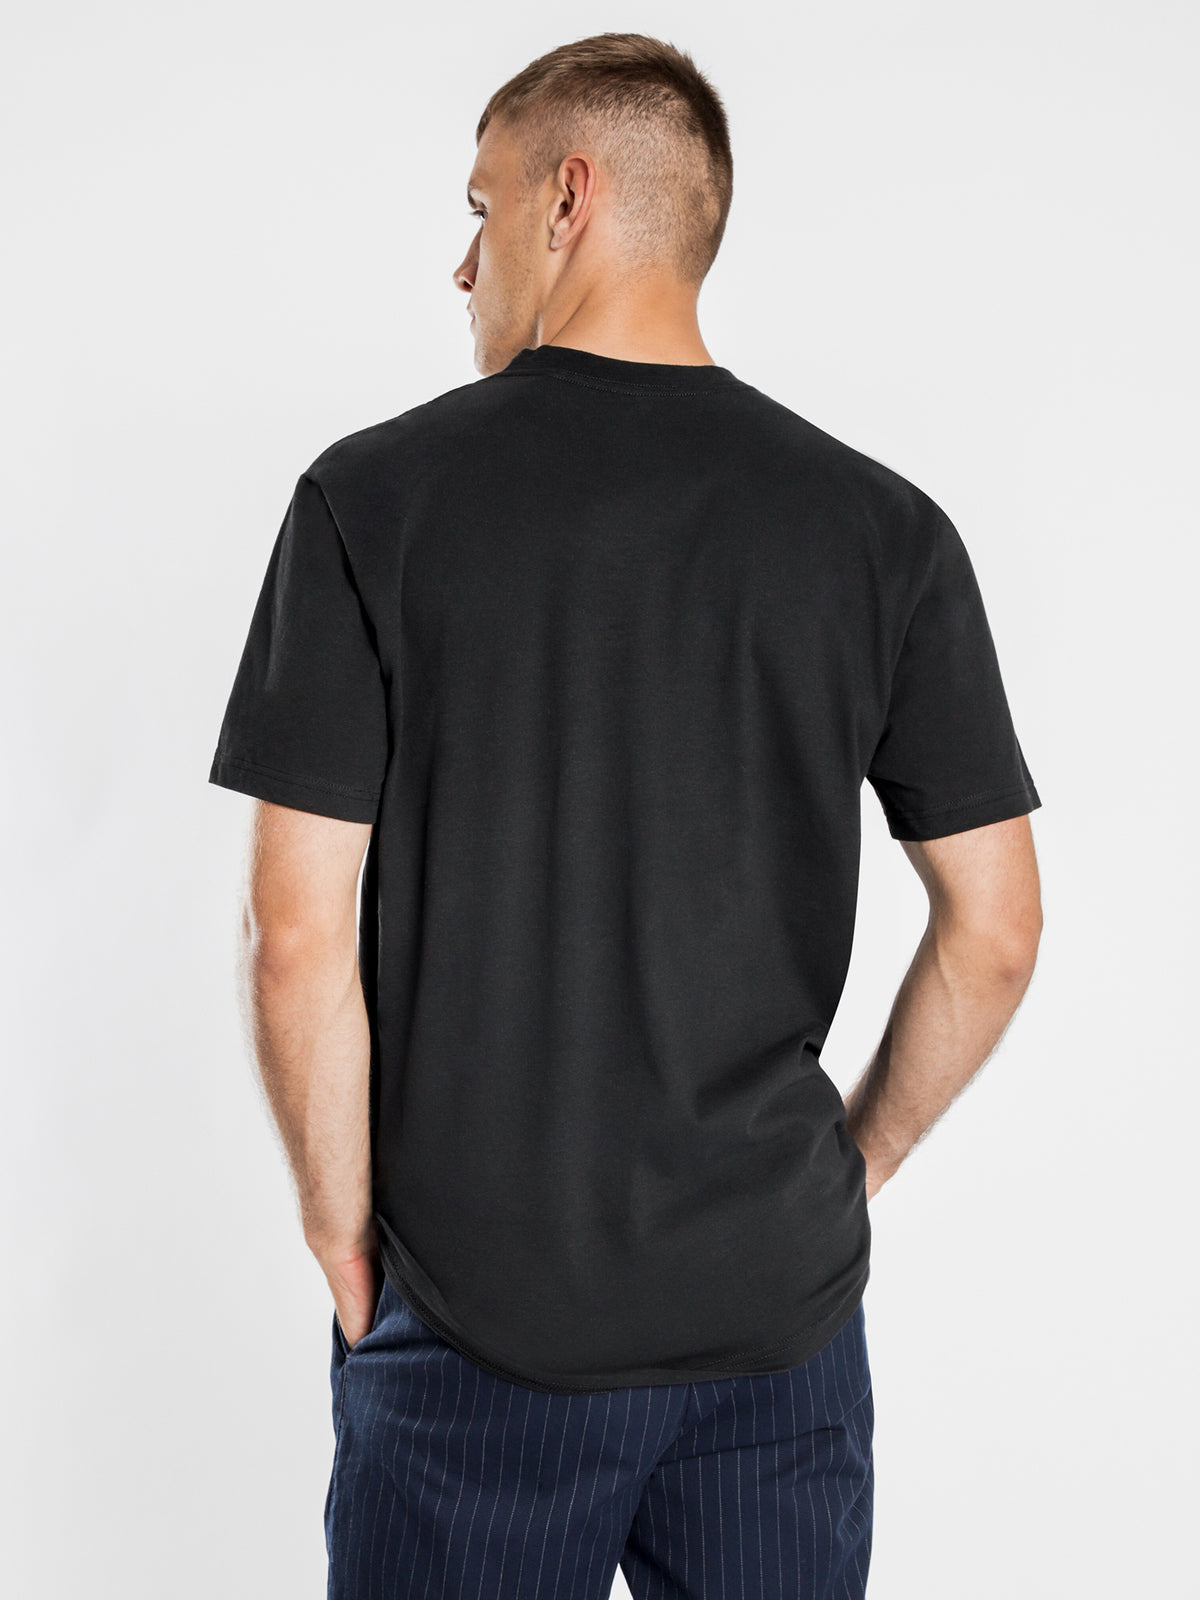 Westbrae Short Sleeve T-Shirt in Black